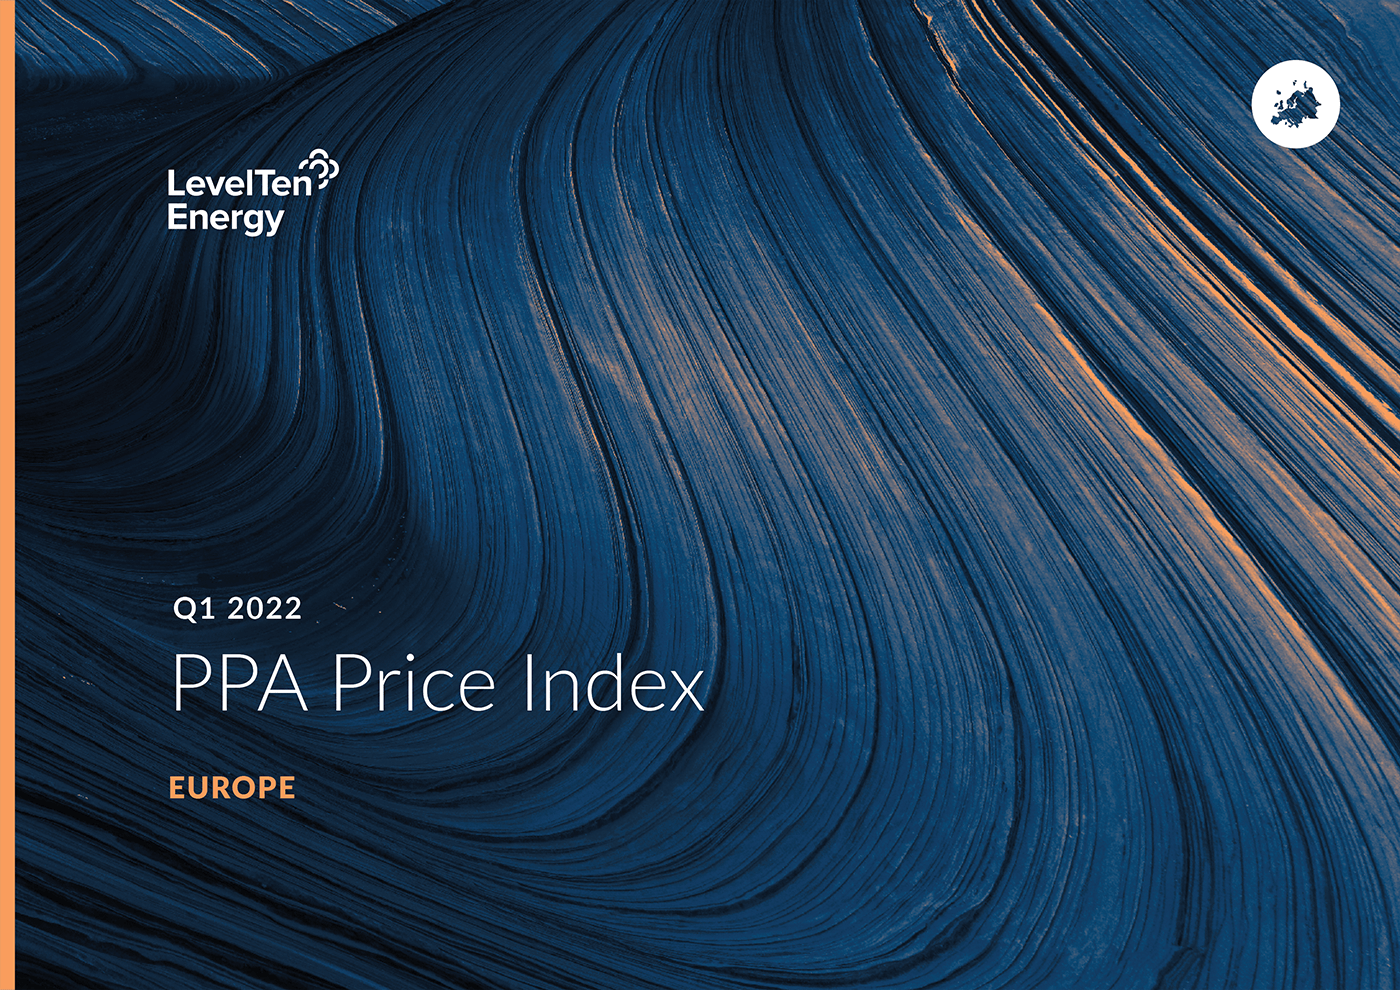 Q1 2022 PPA Price Index - Europe